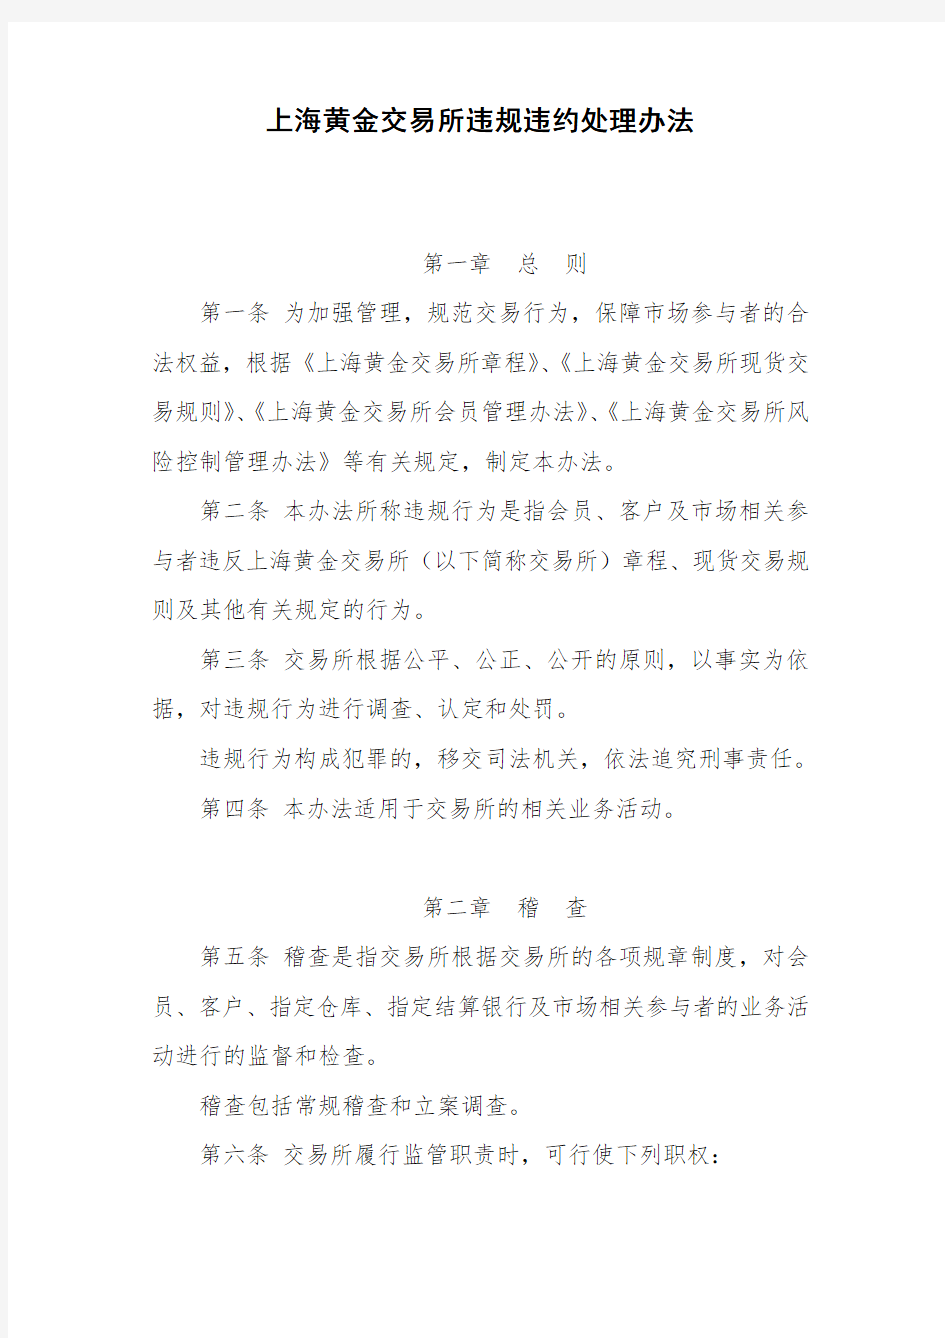 参考资料(14)业务规则(风险控制)：上海黄金交易所违规违约处理办法